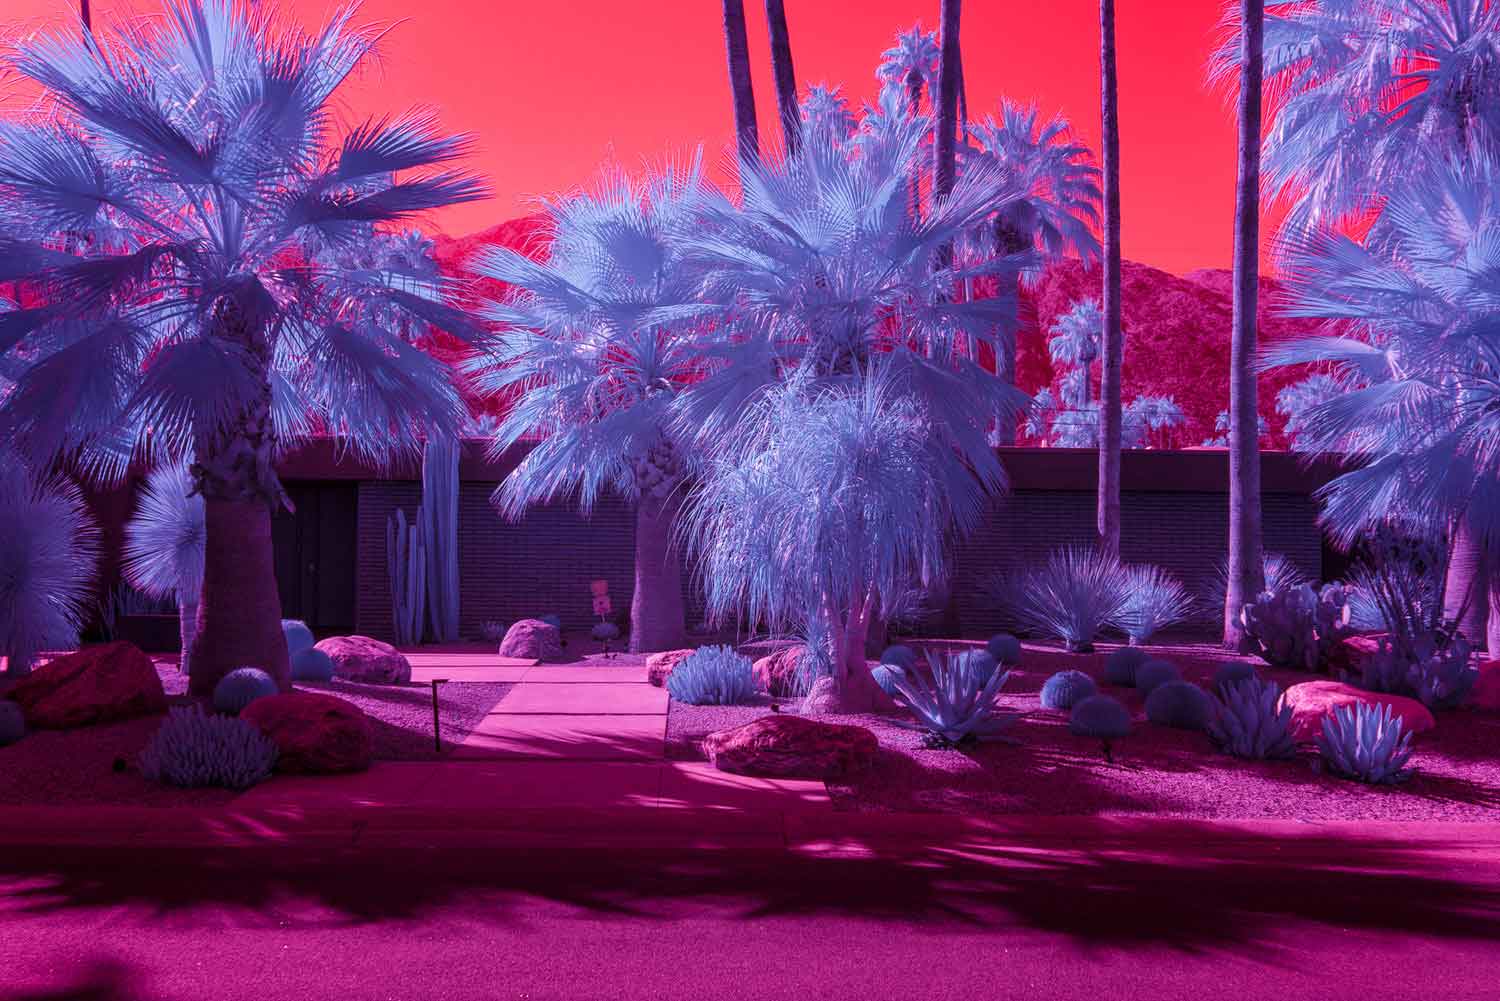 kate ballis infra realism of palm springs